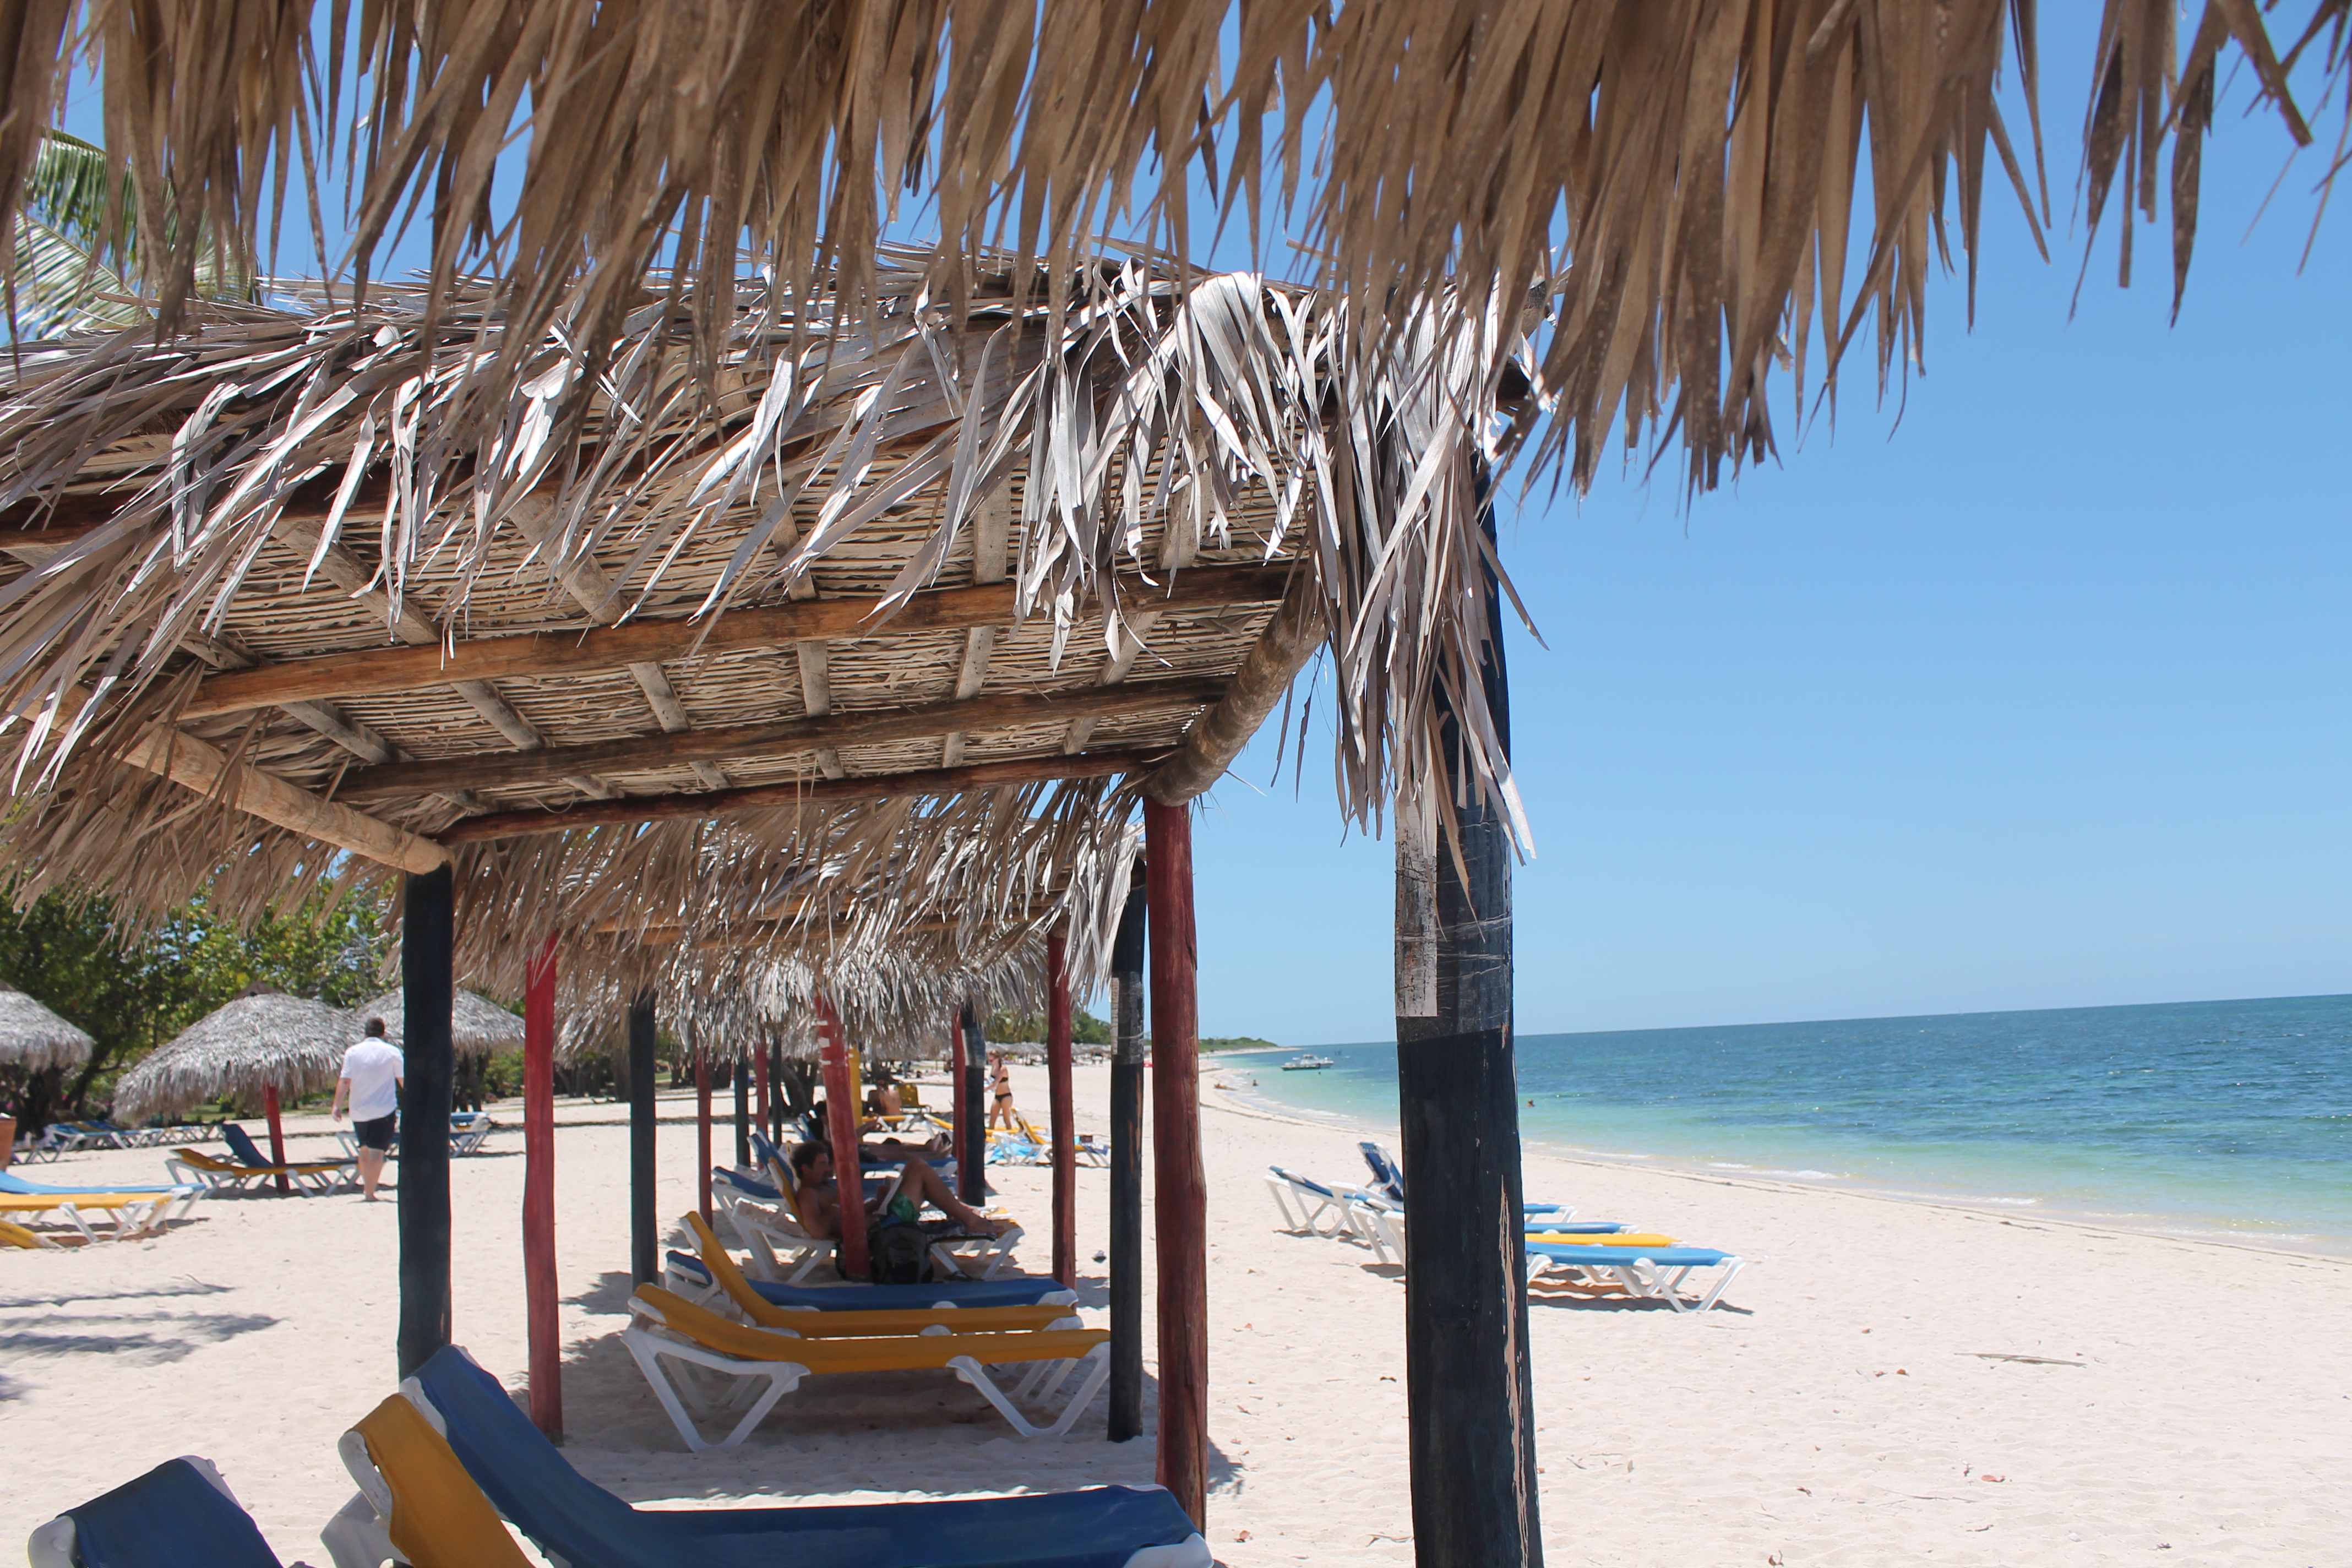 Una settimana a Cuba Playa Ancon ph. @poshbackpackers